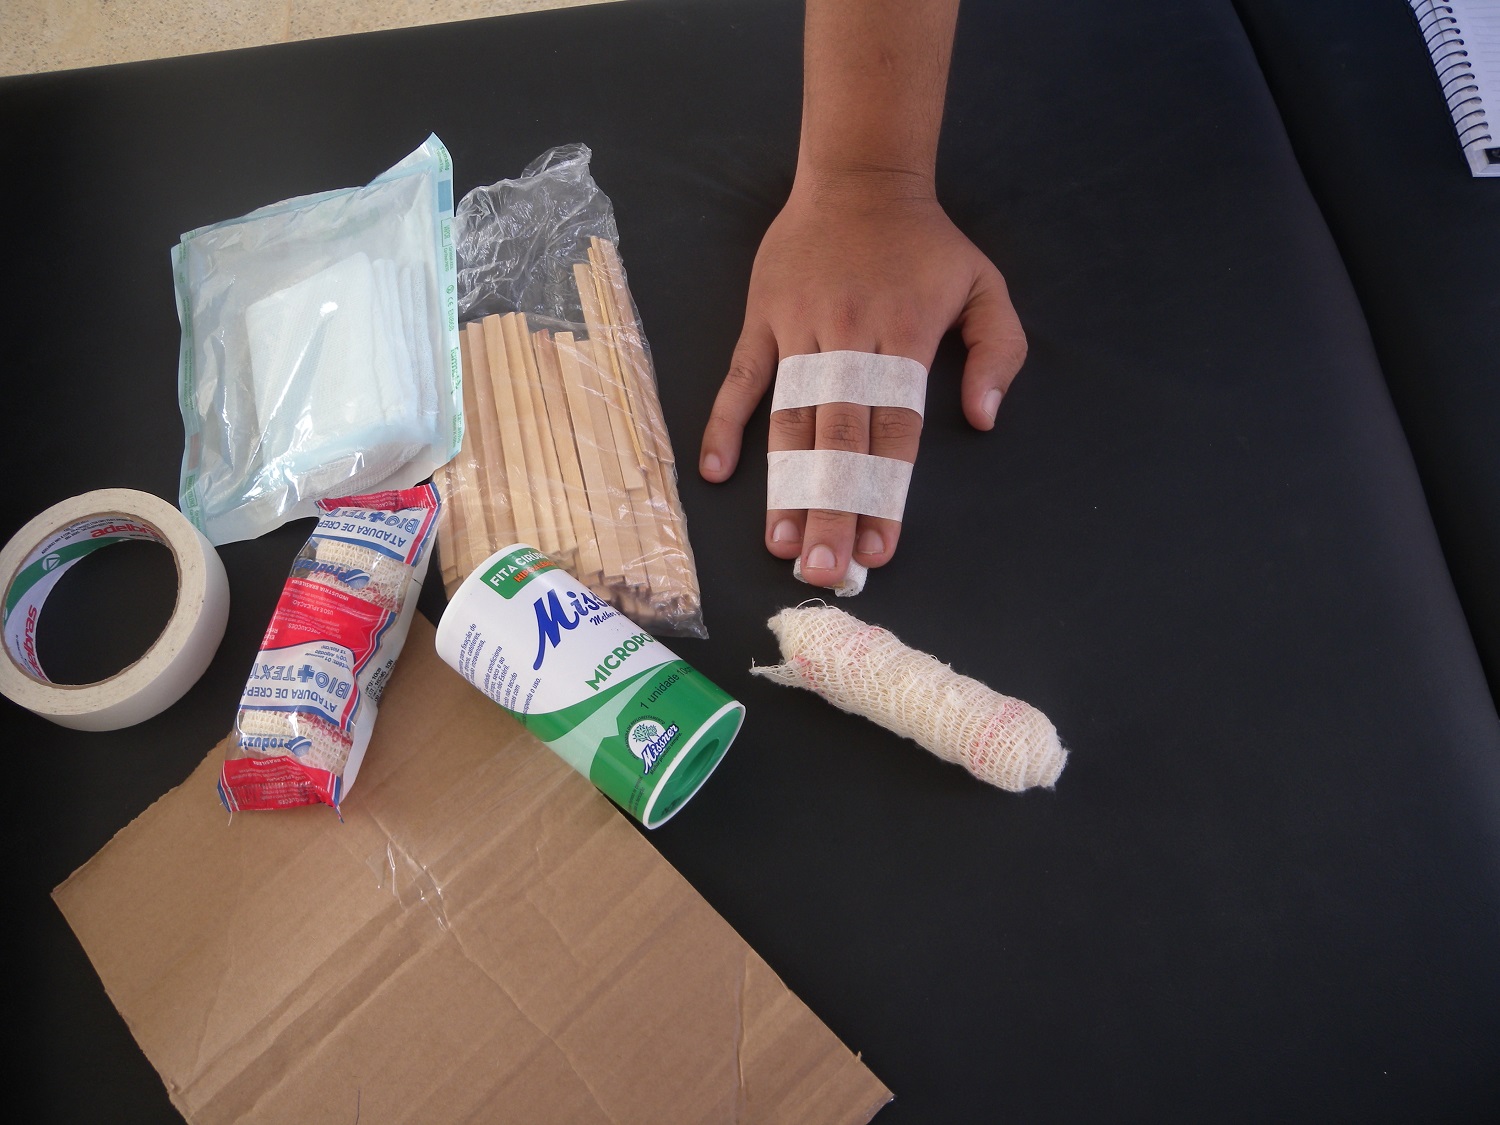 Demonstração de como fazer imobilização de dedo fraturado com materiais como palito de picolé, fita crepe, durex, papelão